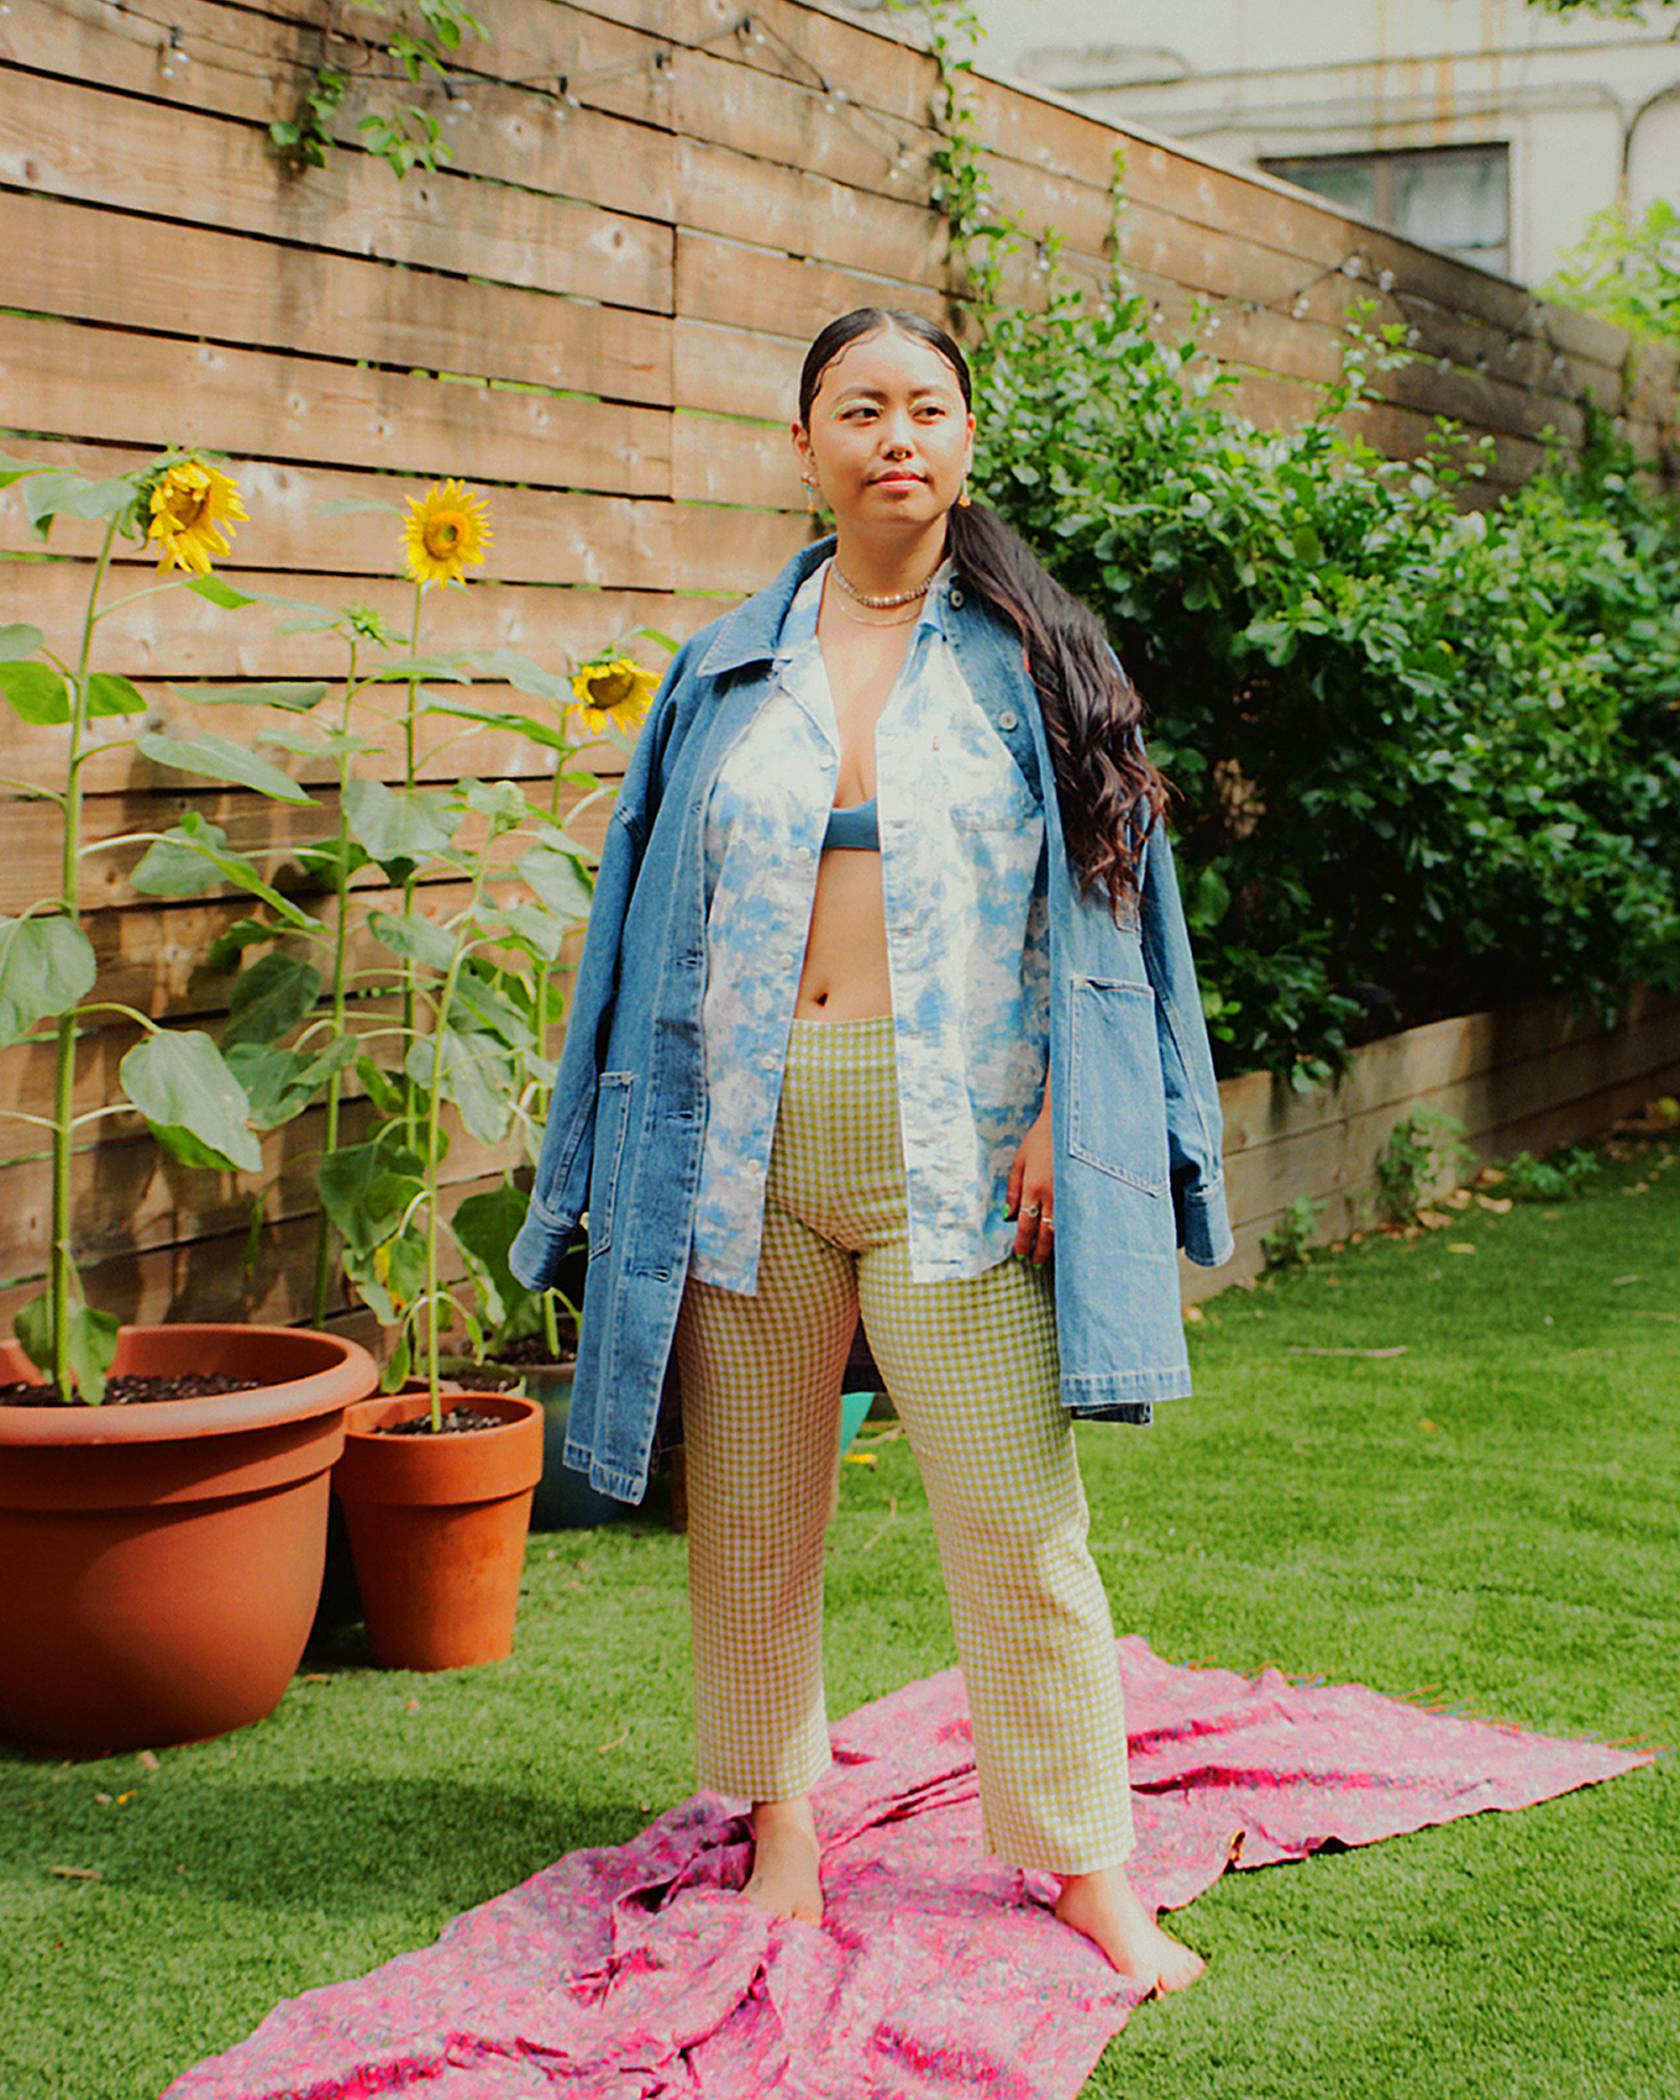 Jezz Chung dans sa cour extérieure dans une chemise western boutonnée en denim de Levis, agencée à un pantalon kaki.